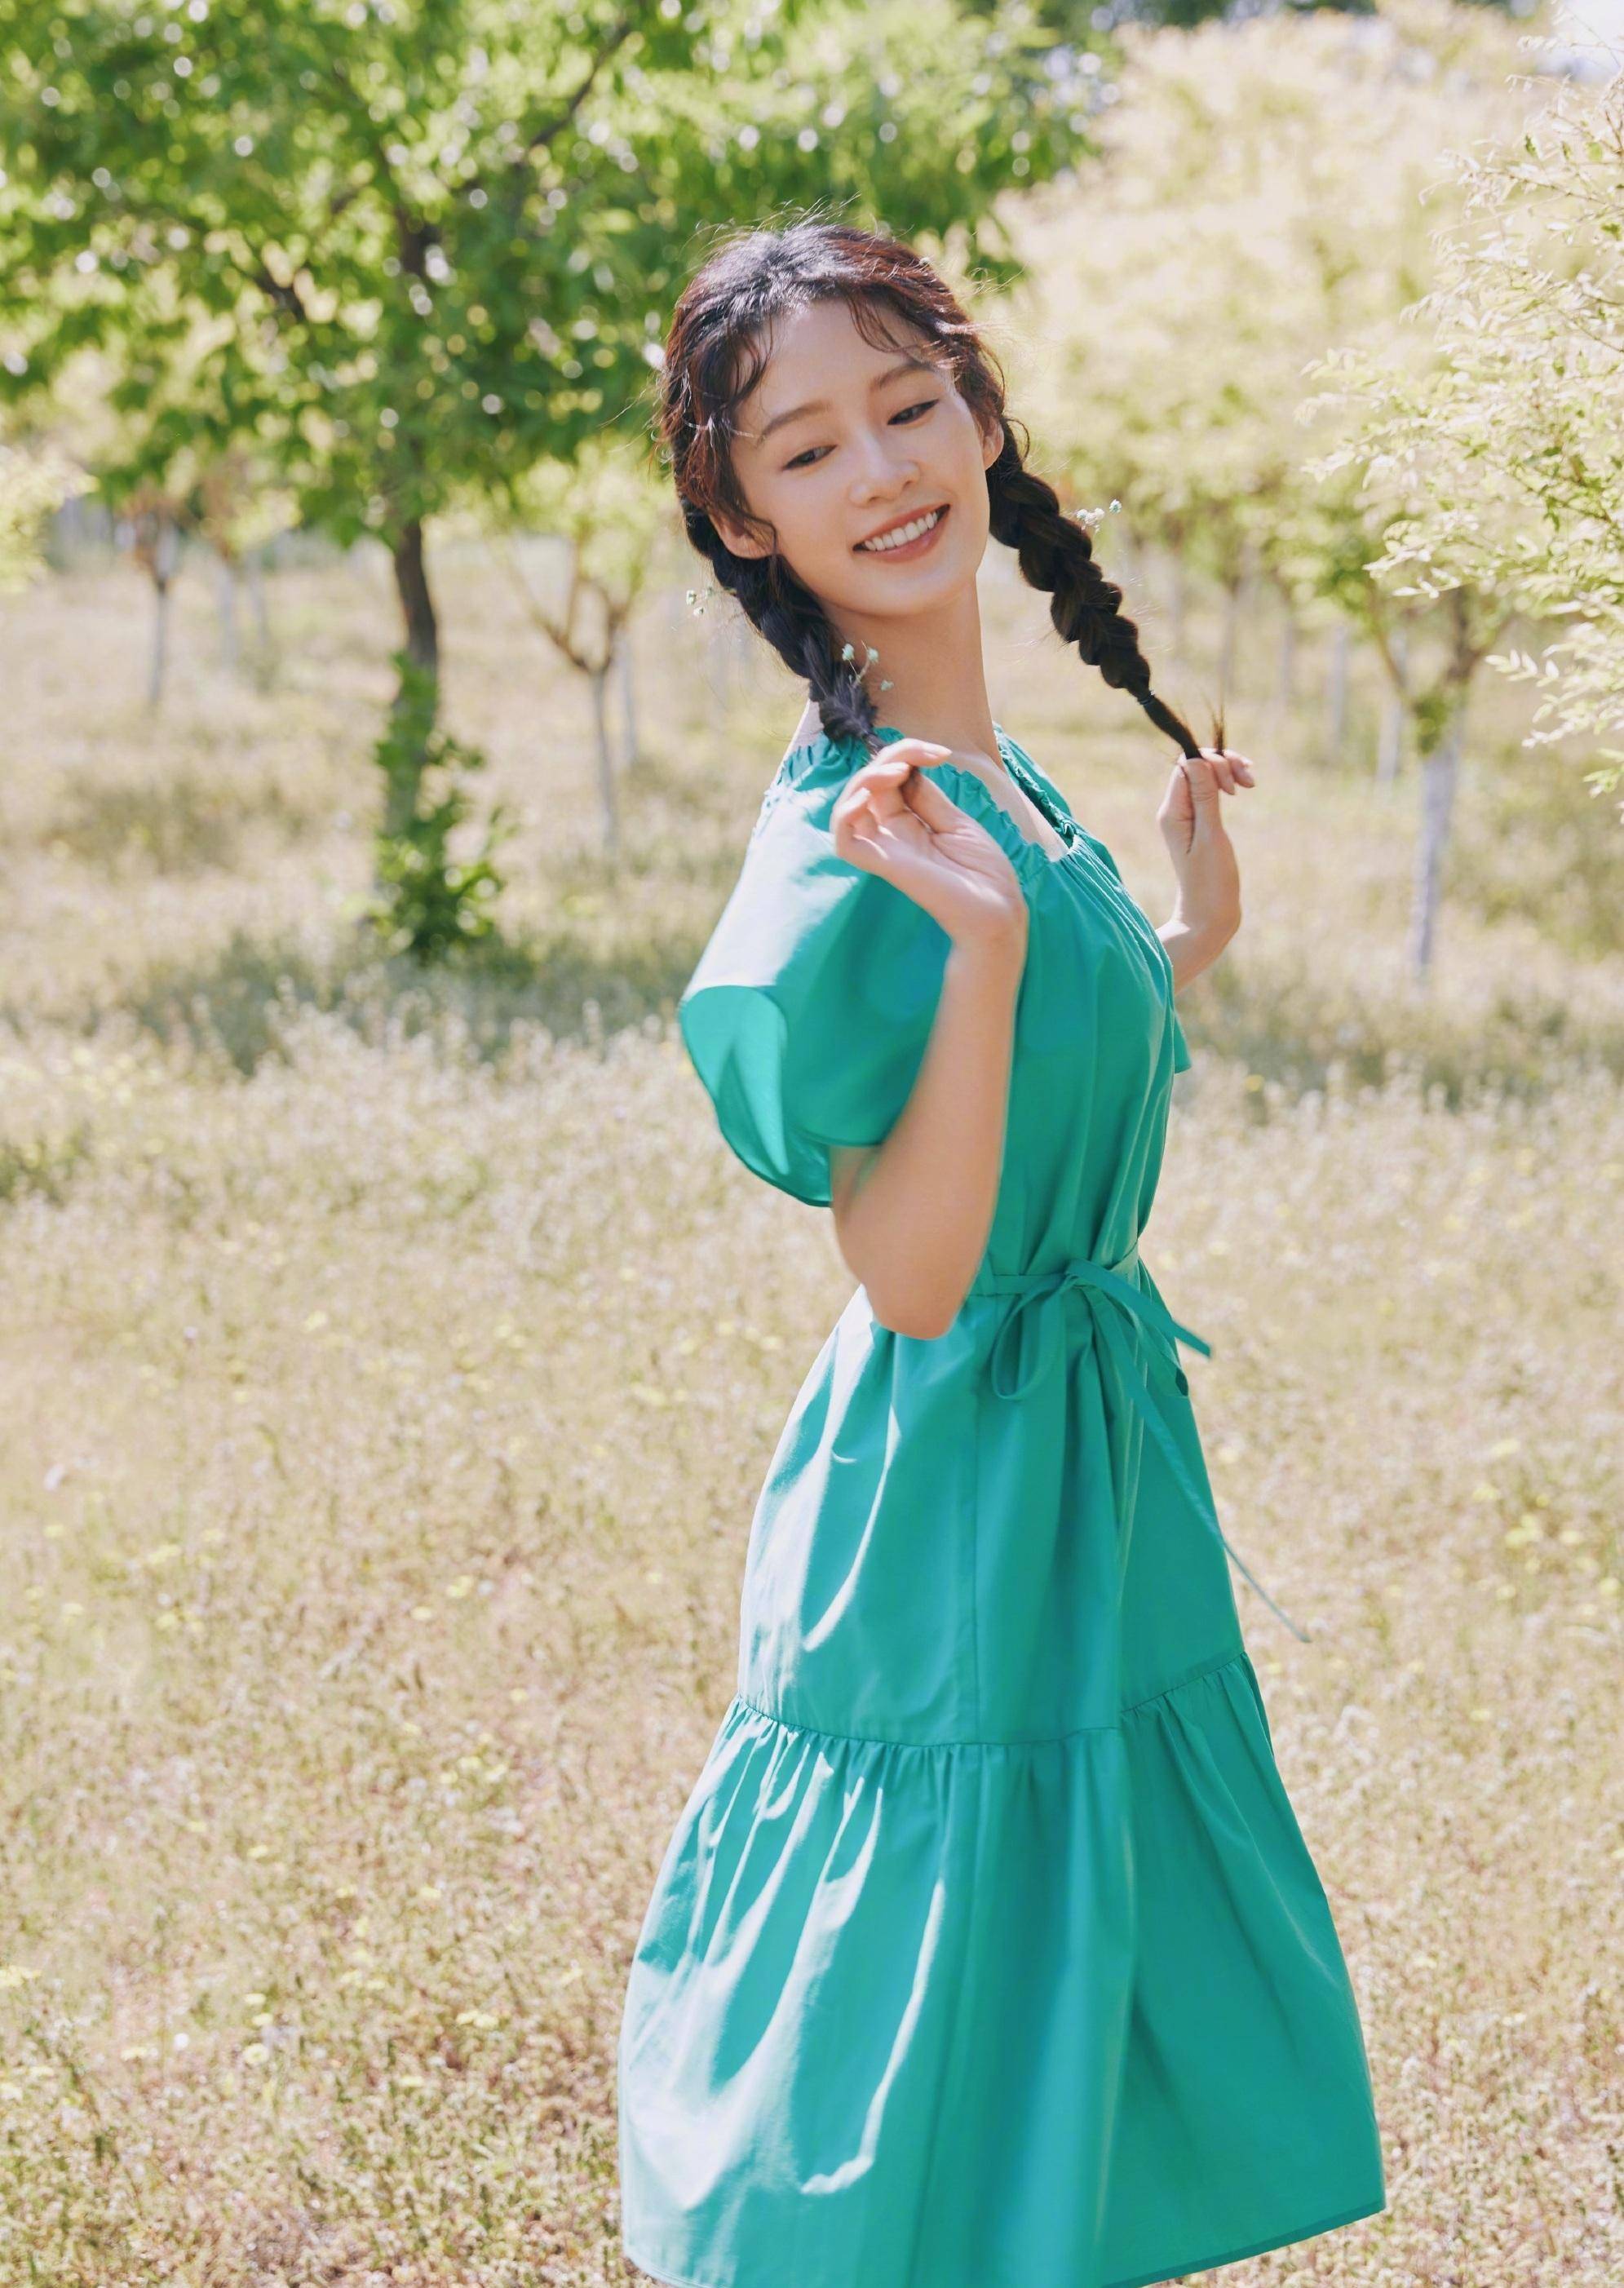 薛宝钗李沁绿色短裙,展现苗条身材和迷人笑容,沁人心扉